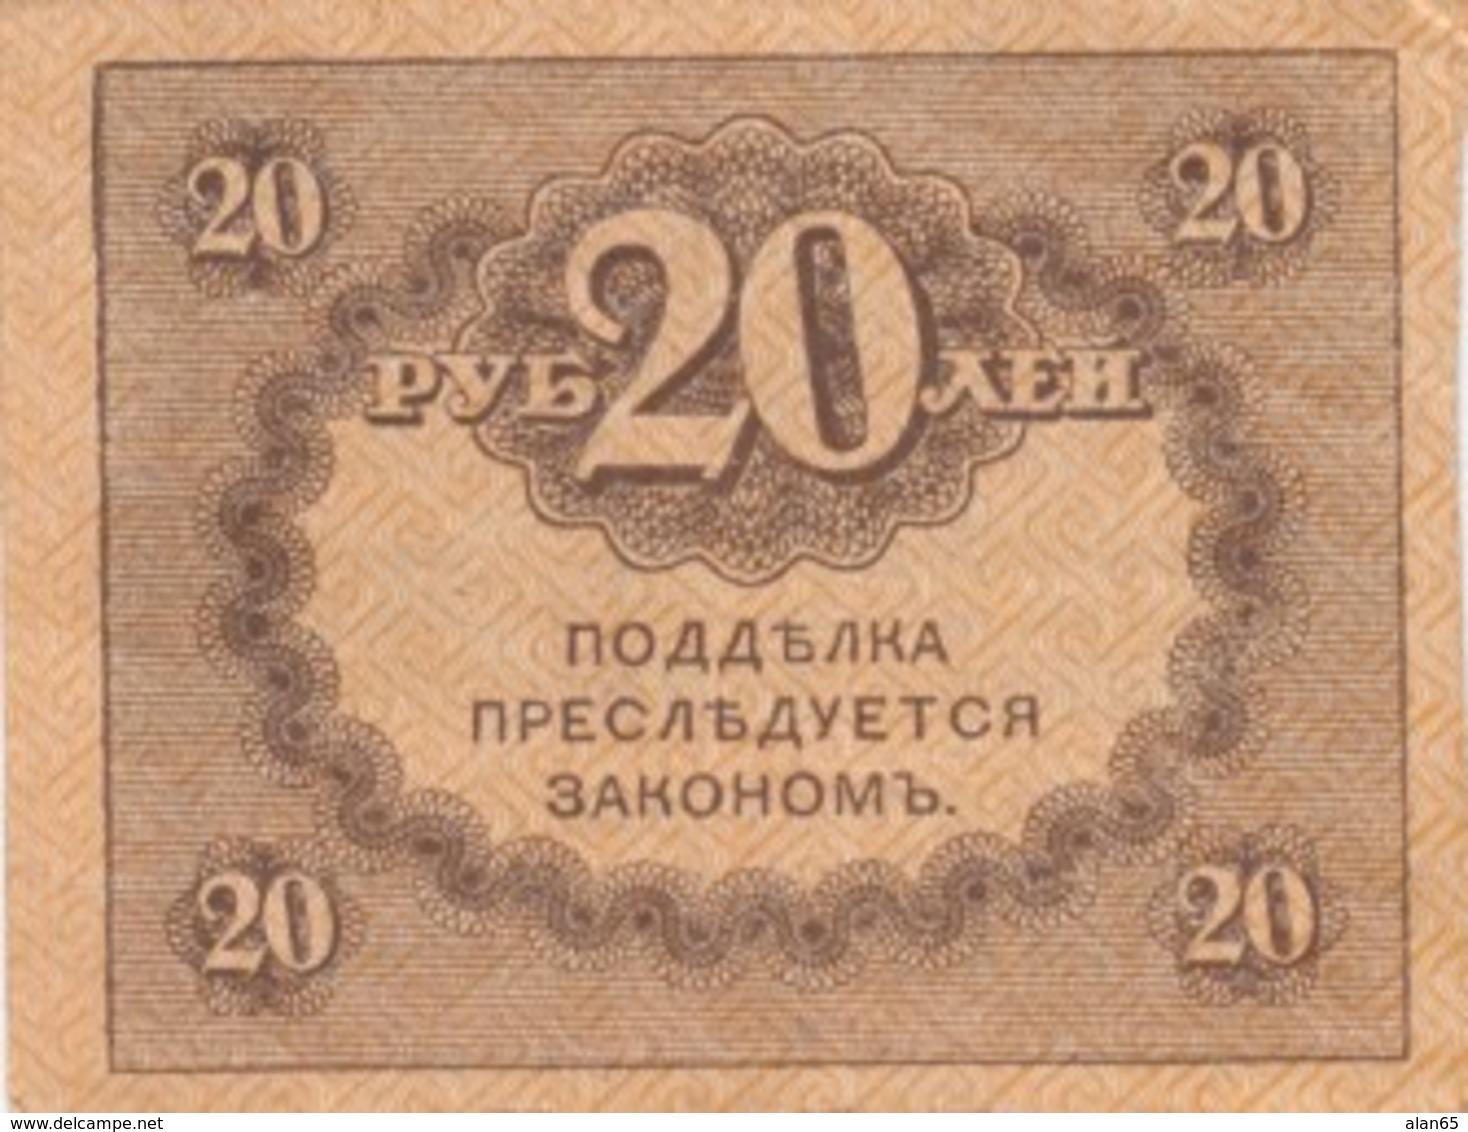 Russia #38 20 Ruble Ex Fine 1917 Banknote - Russia